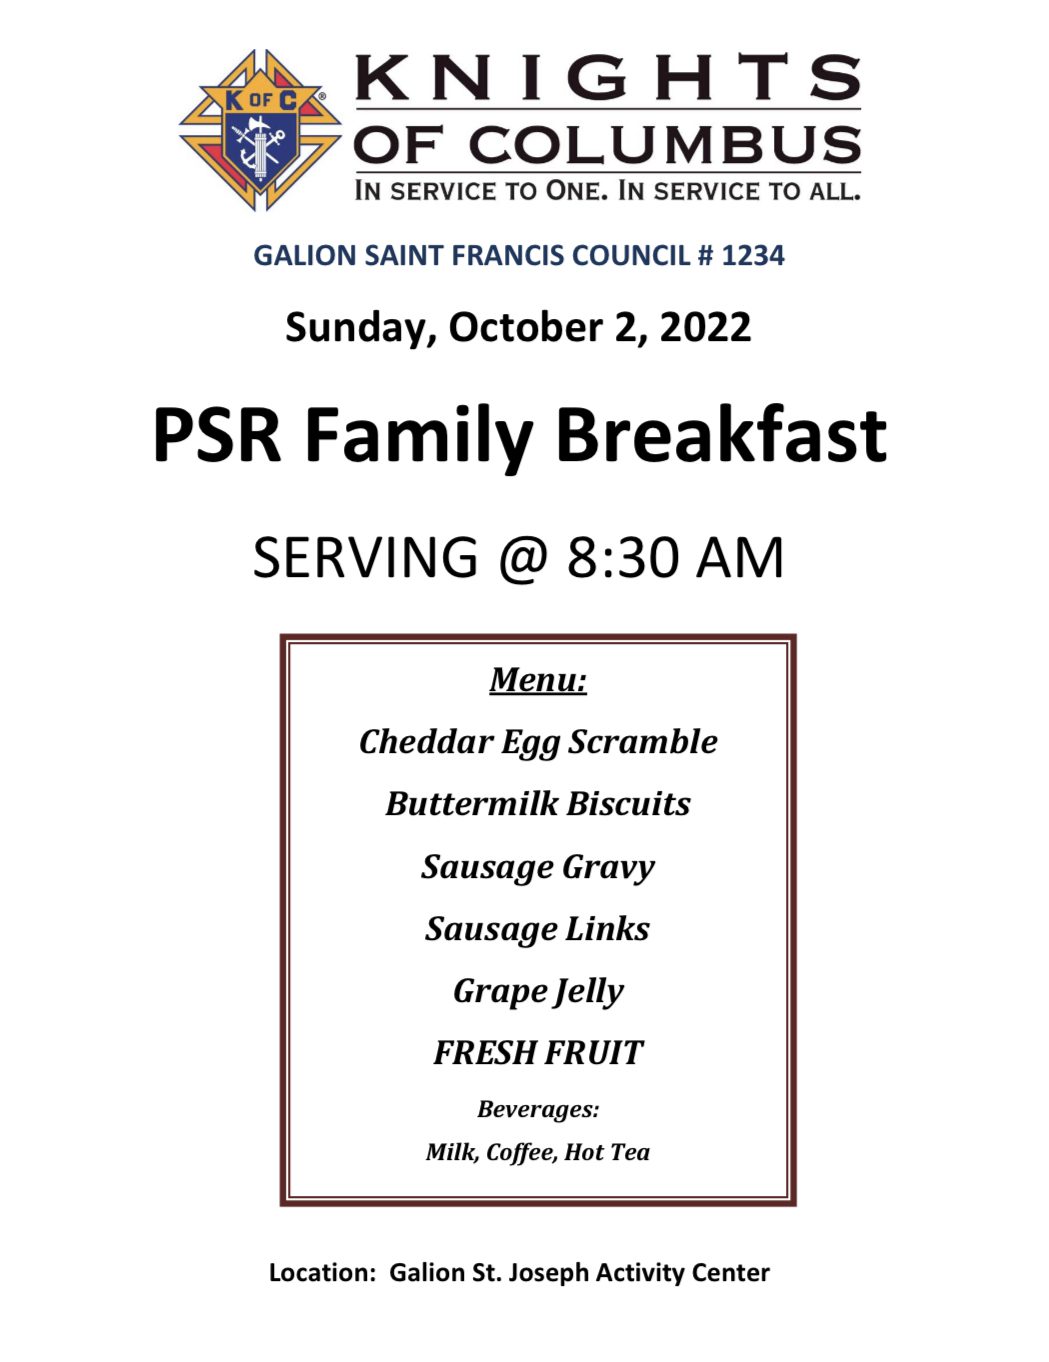 PSR Family Breakfast